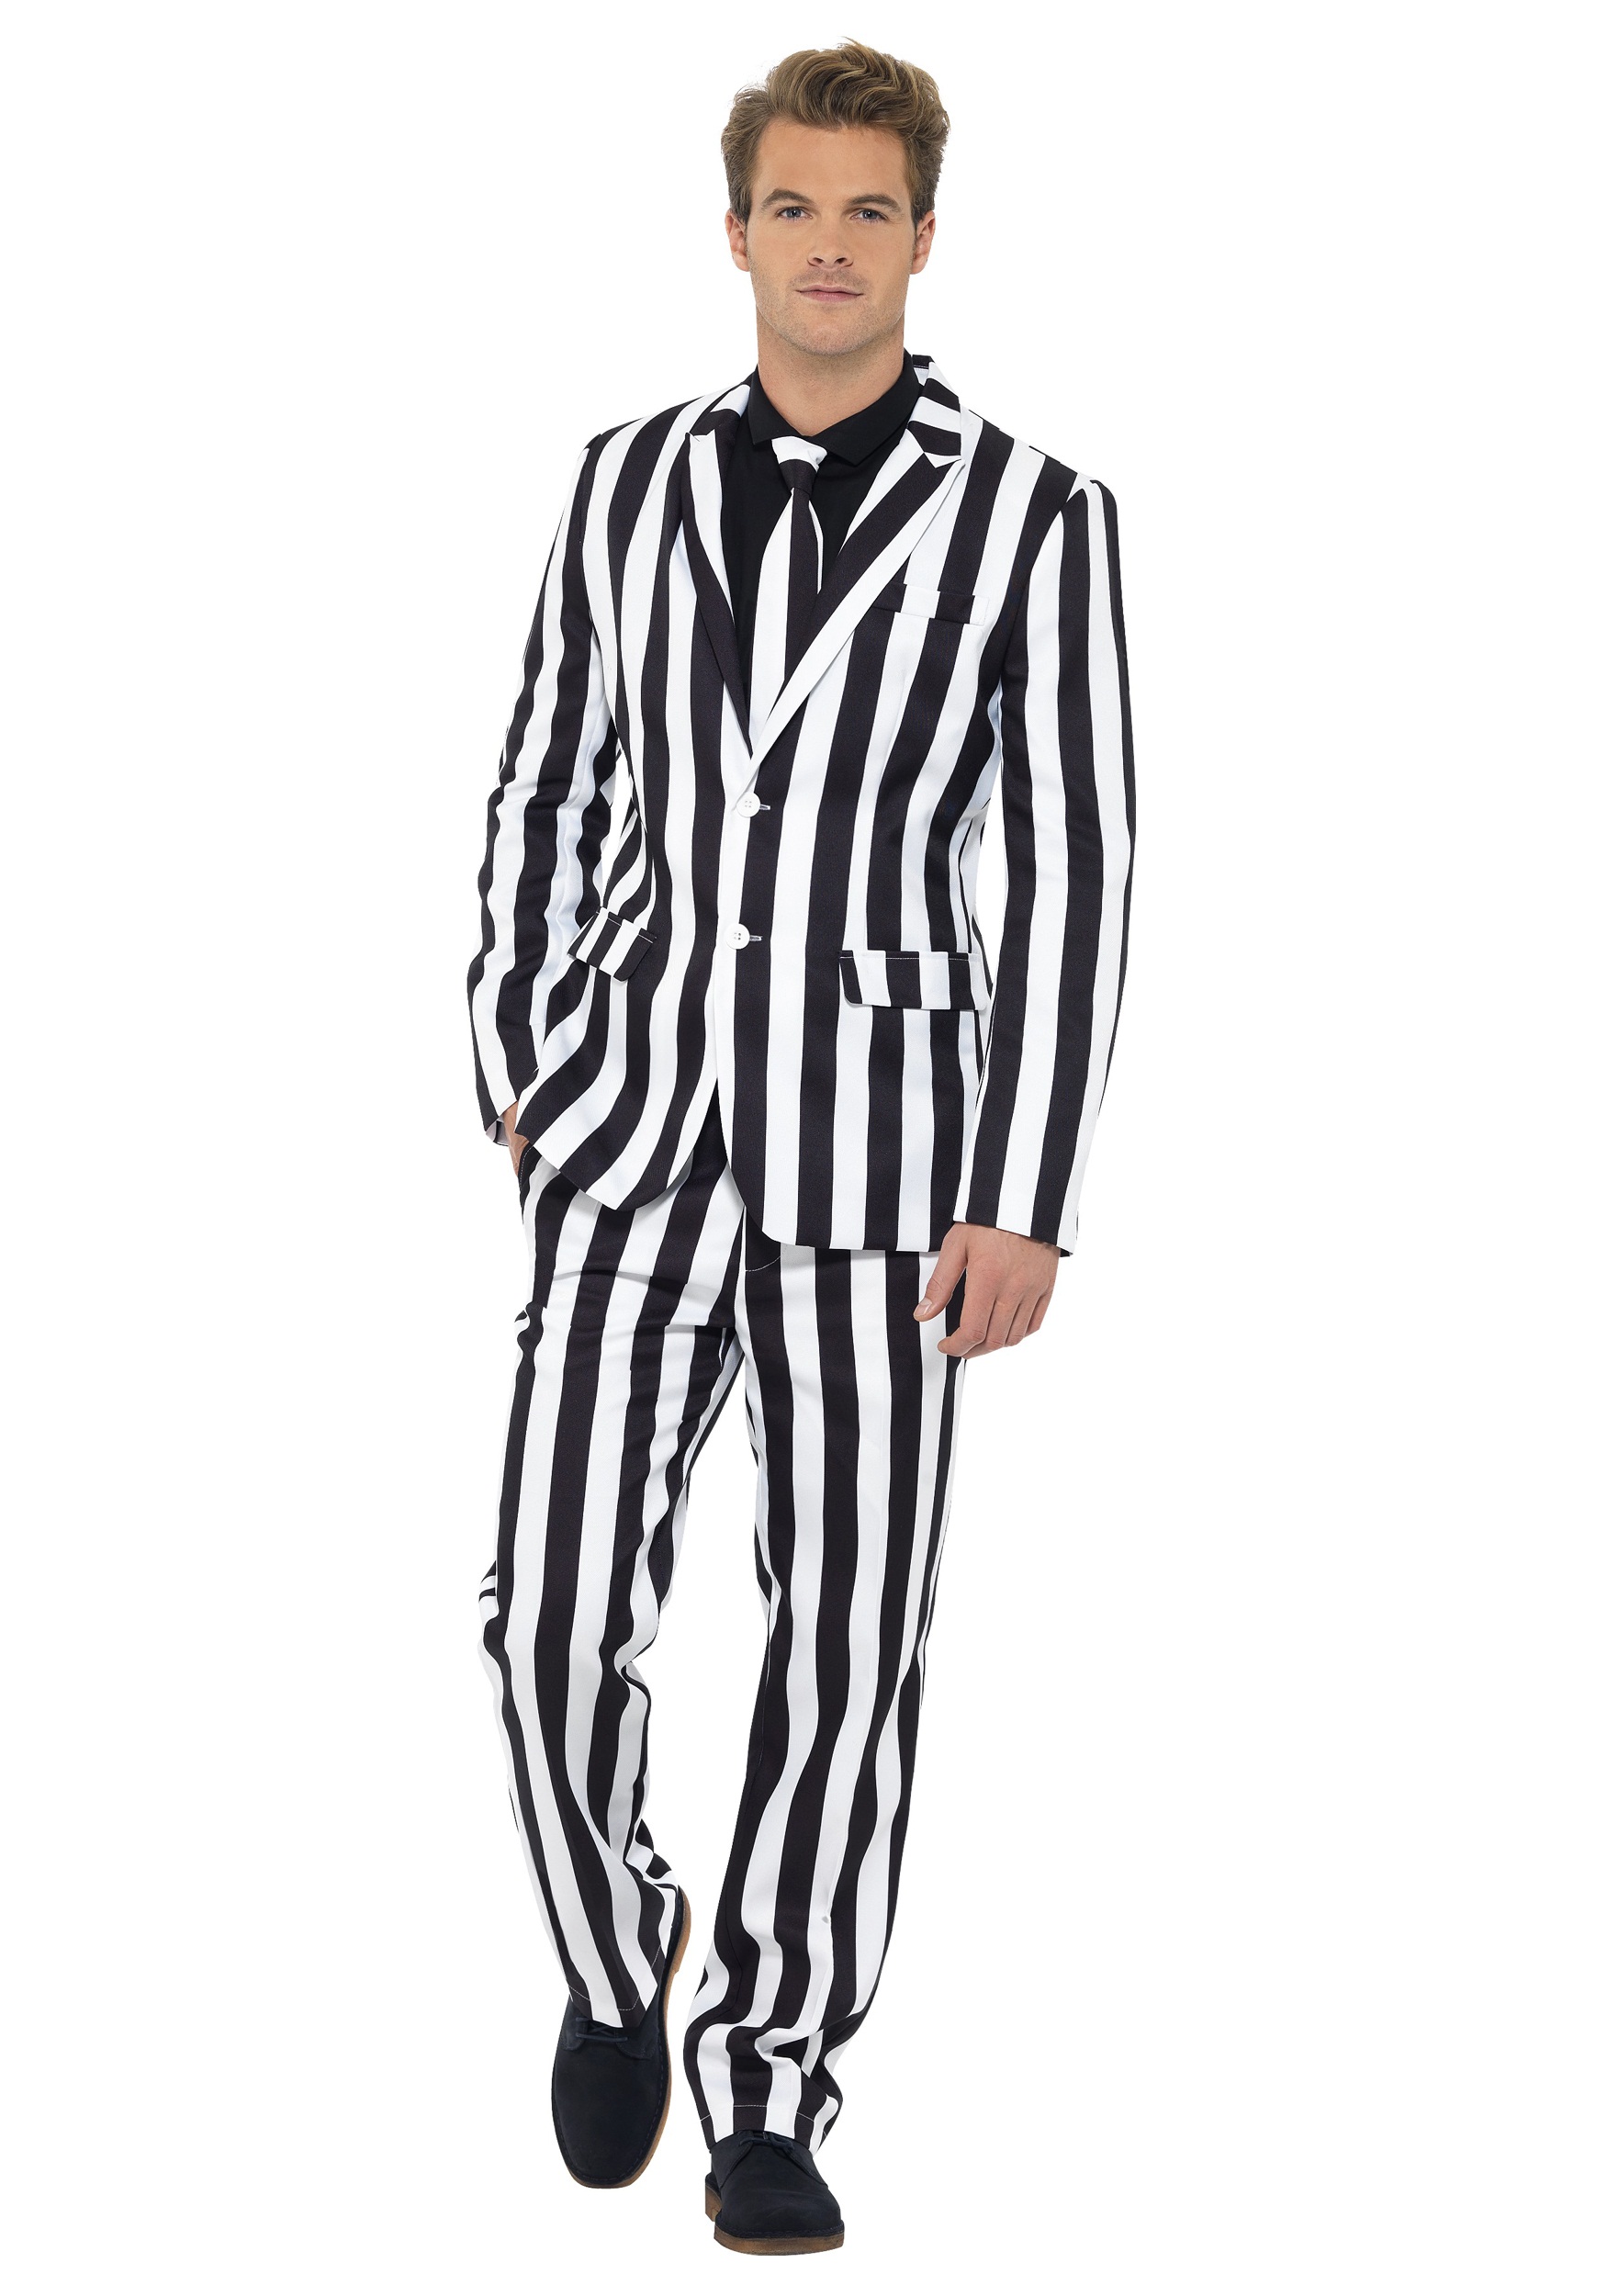 Men’s Humbug Striped Suit